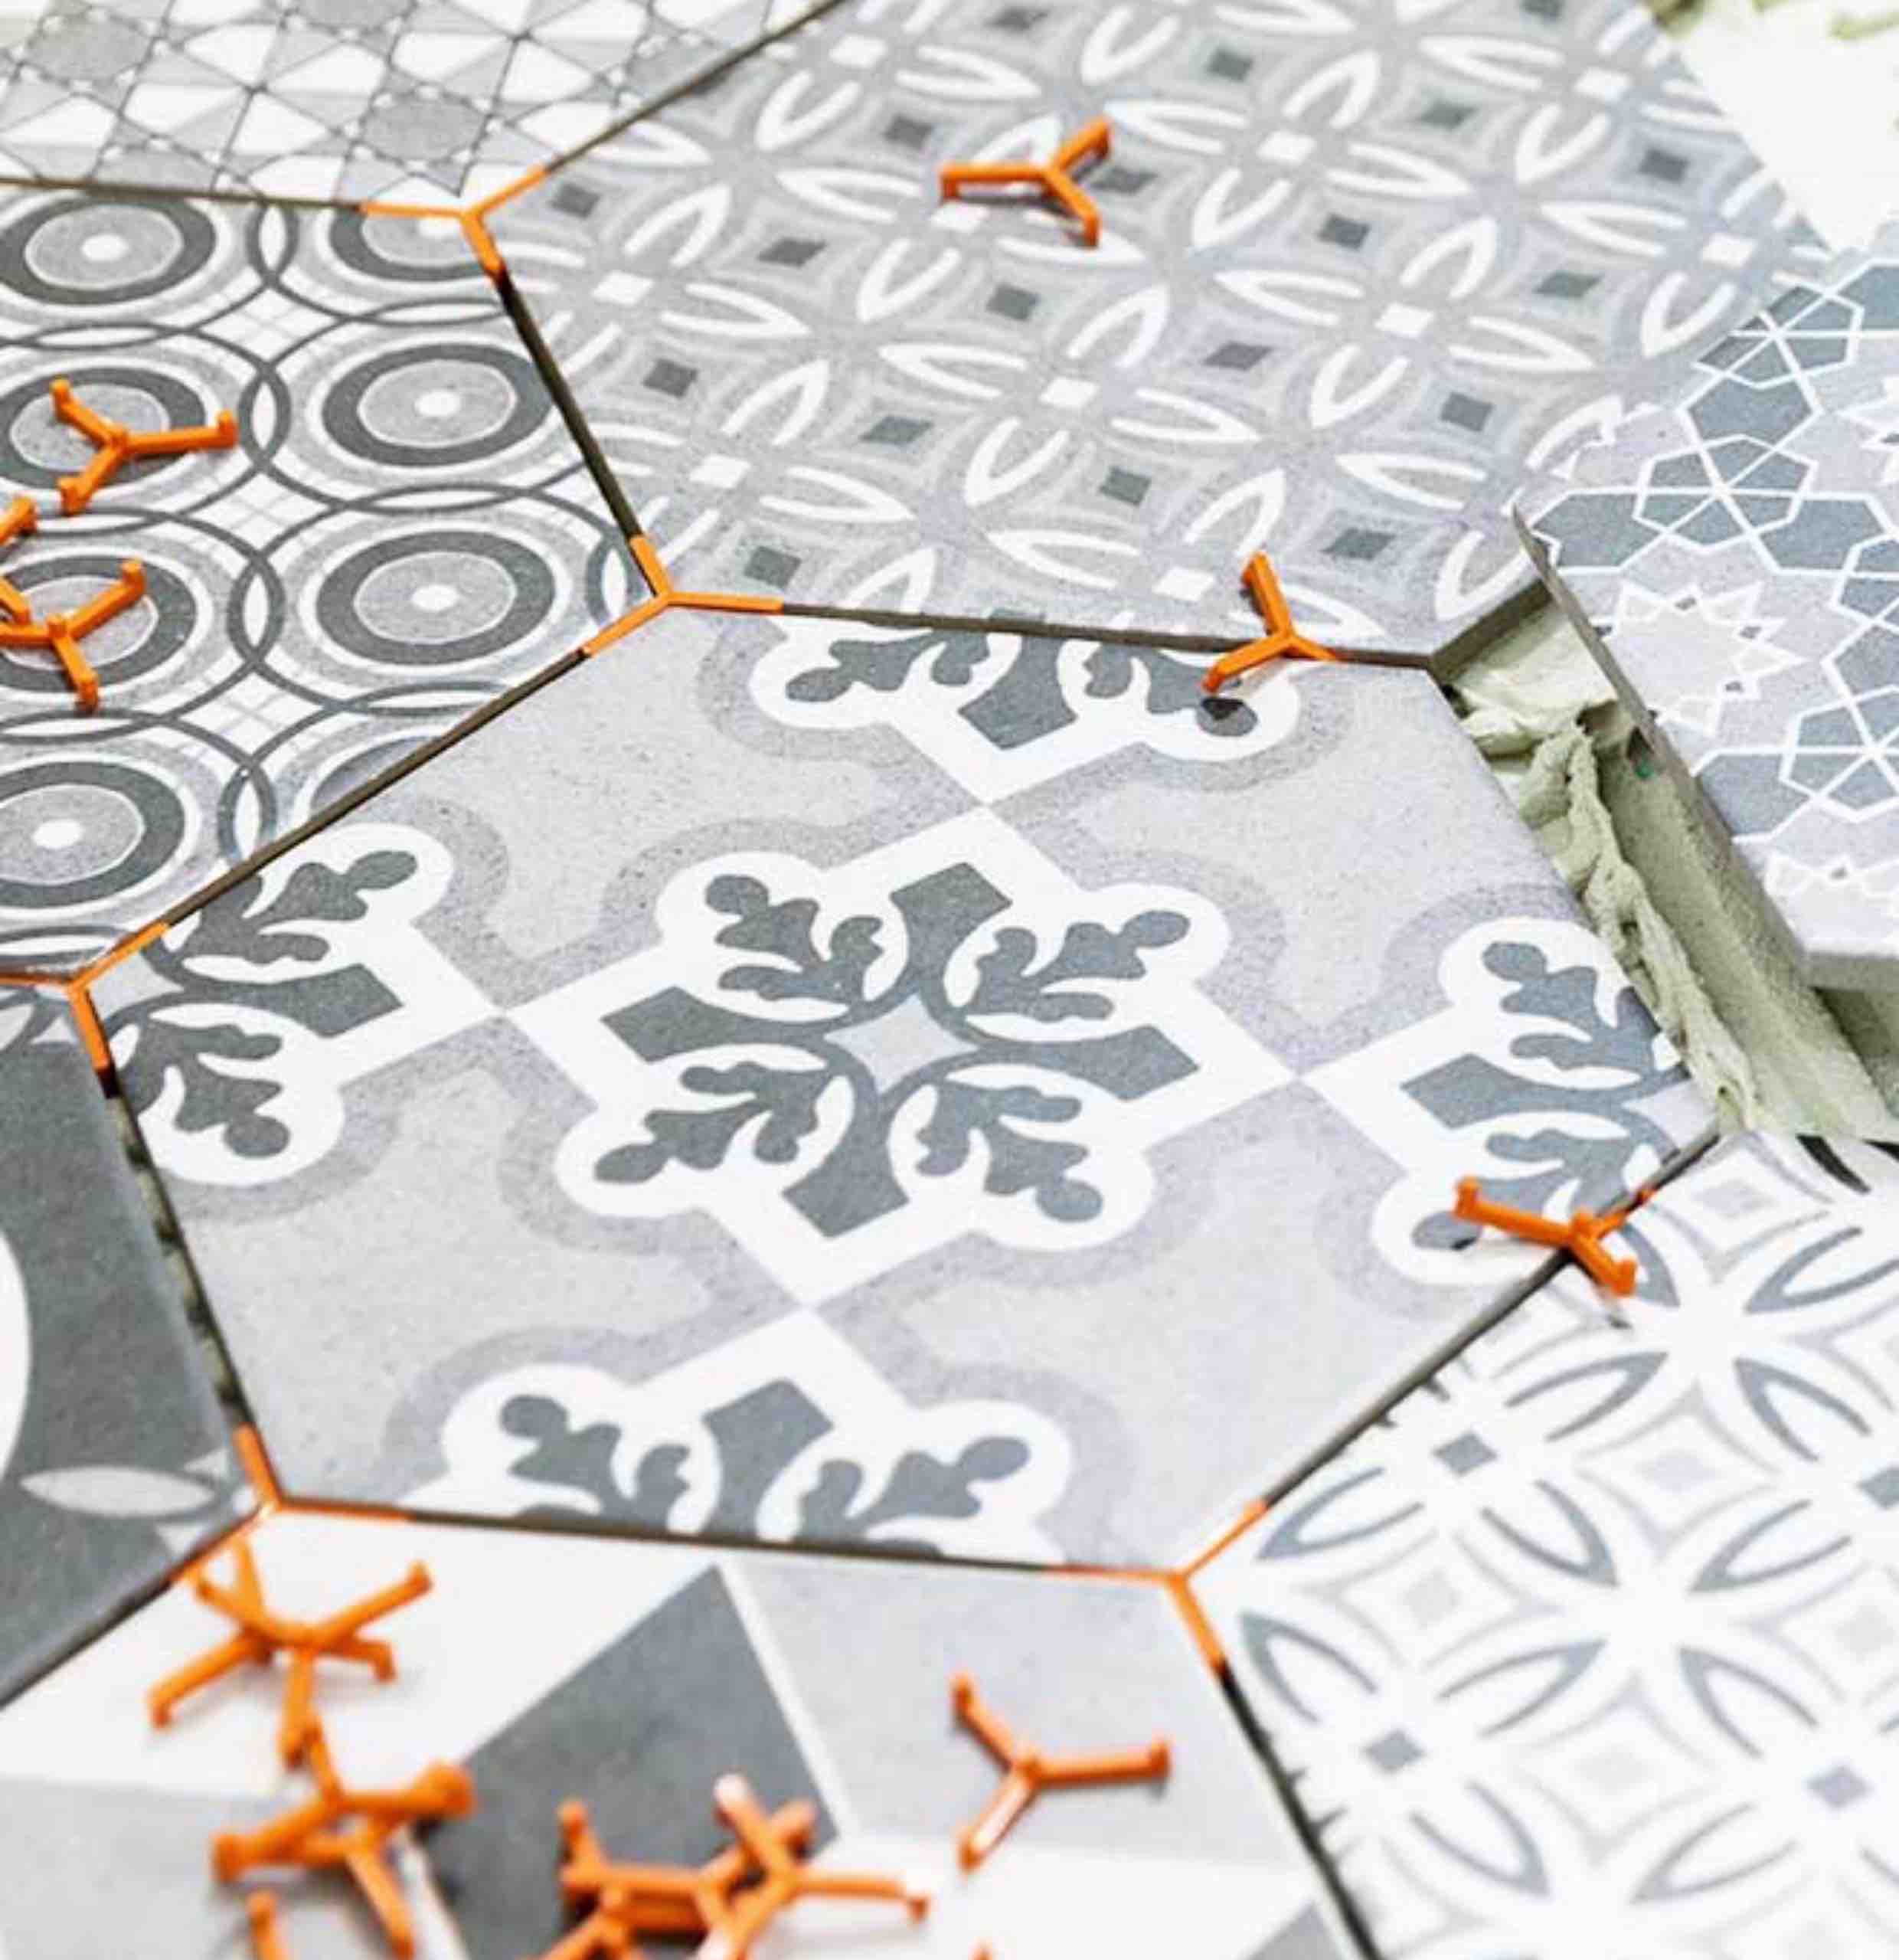 Trendy hexagonal tiles installed by Footprints Floors in San Antonio.